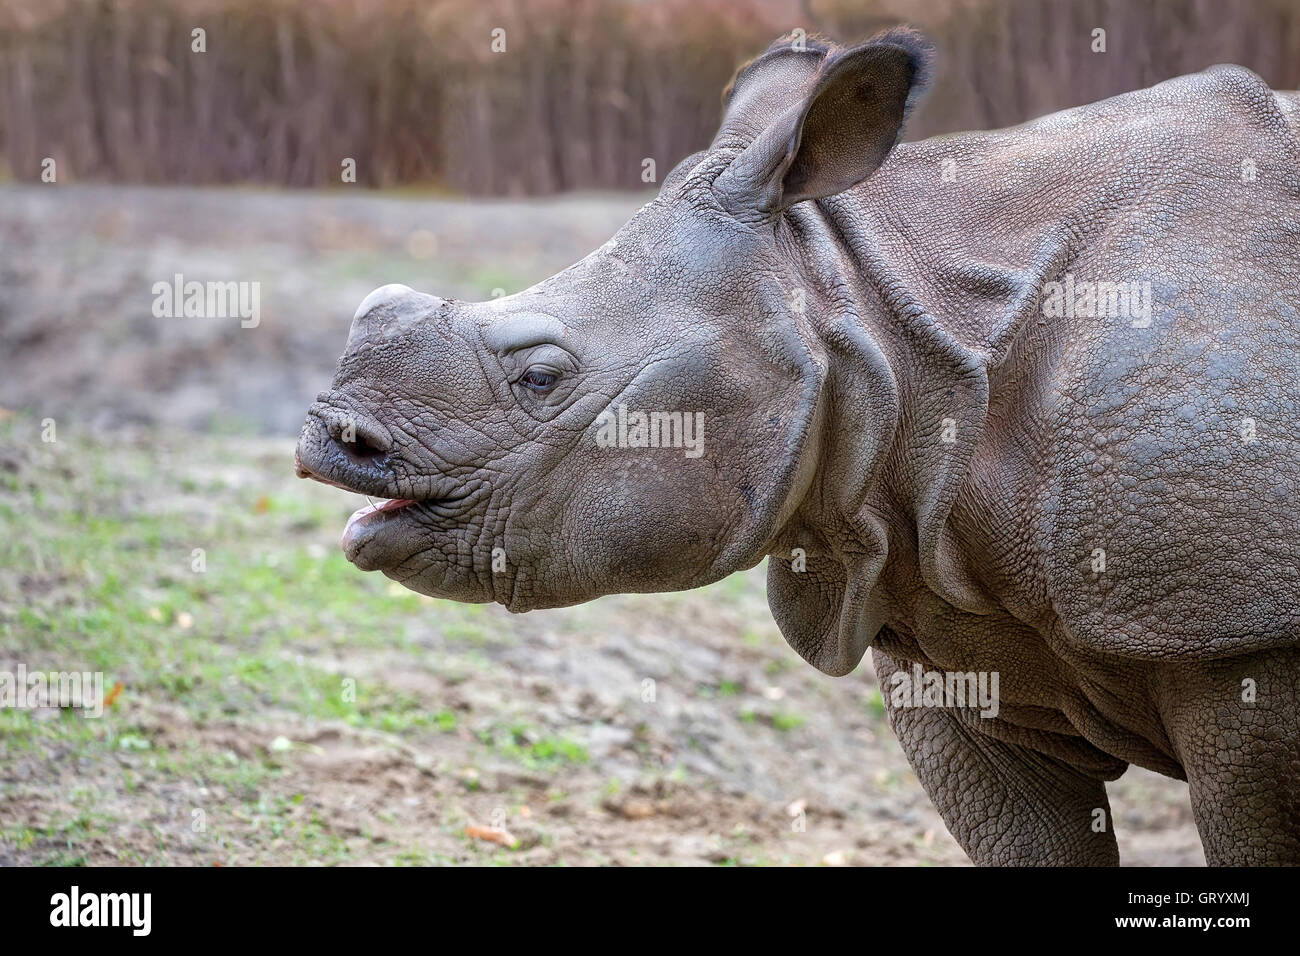 Rhino dans une clairière, un portrait Banque D'Images